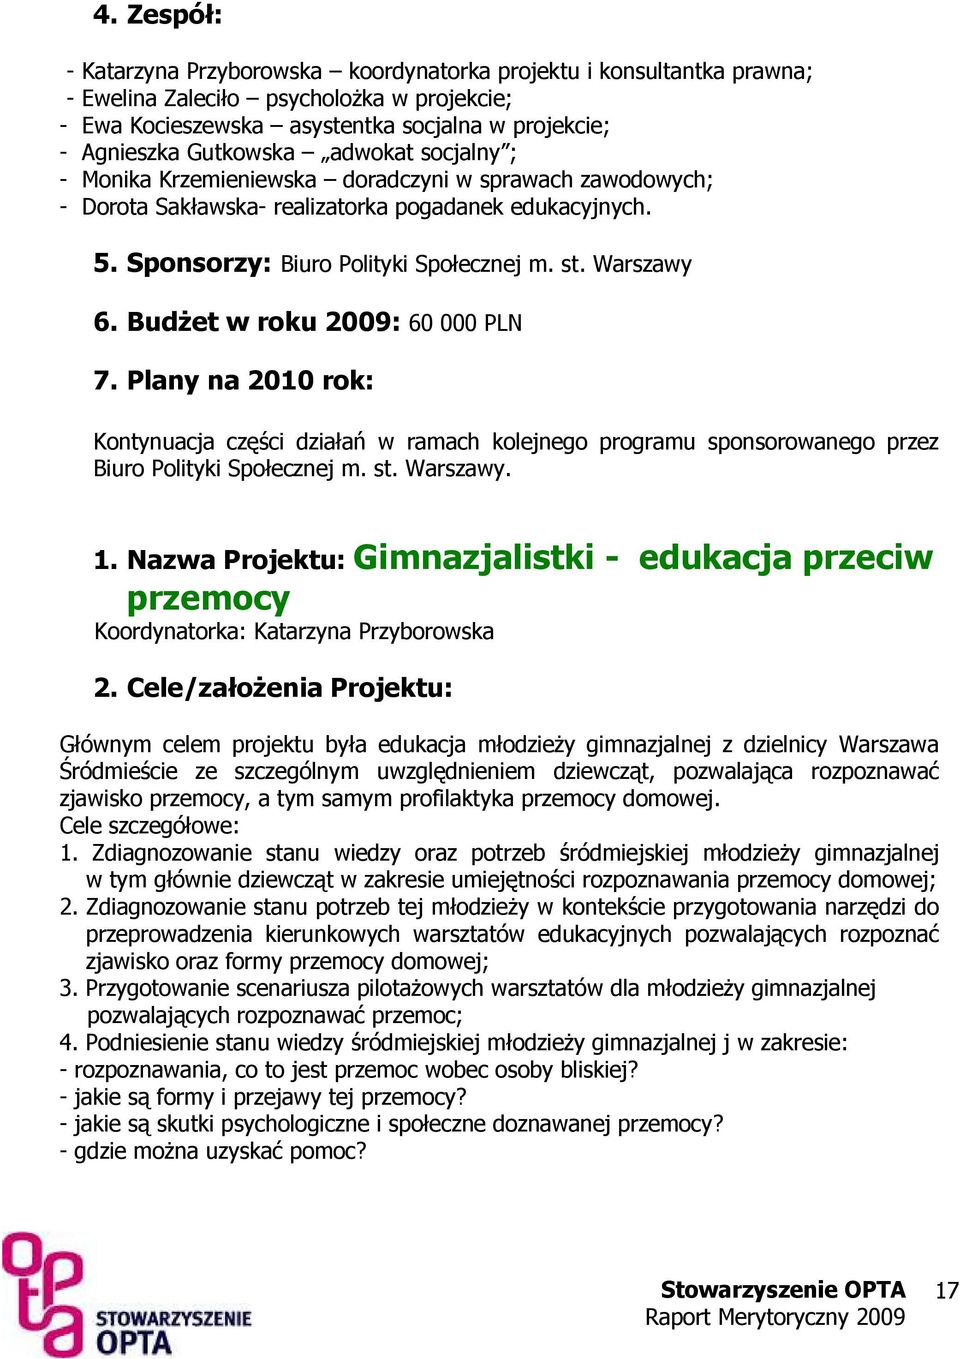 BudŜet w roku 2009: 60 000 PLN 7. Plany na 2010 rok: Kontynuacja części działań w ramach kolejnego programu sponsorowanego przez Biuro Polityki Społecznej m. st. Warszawy. 1.